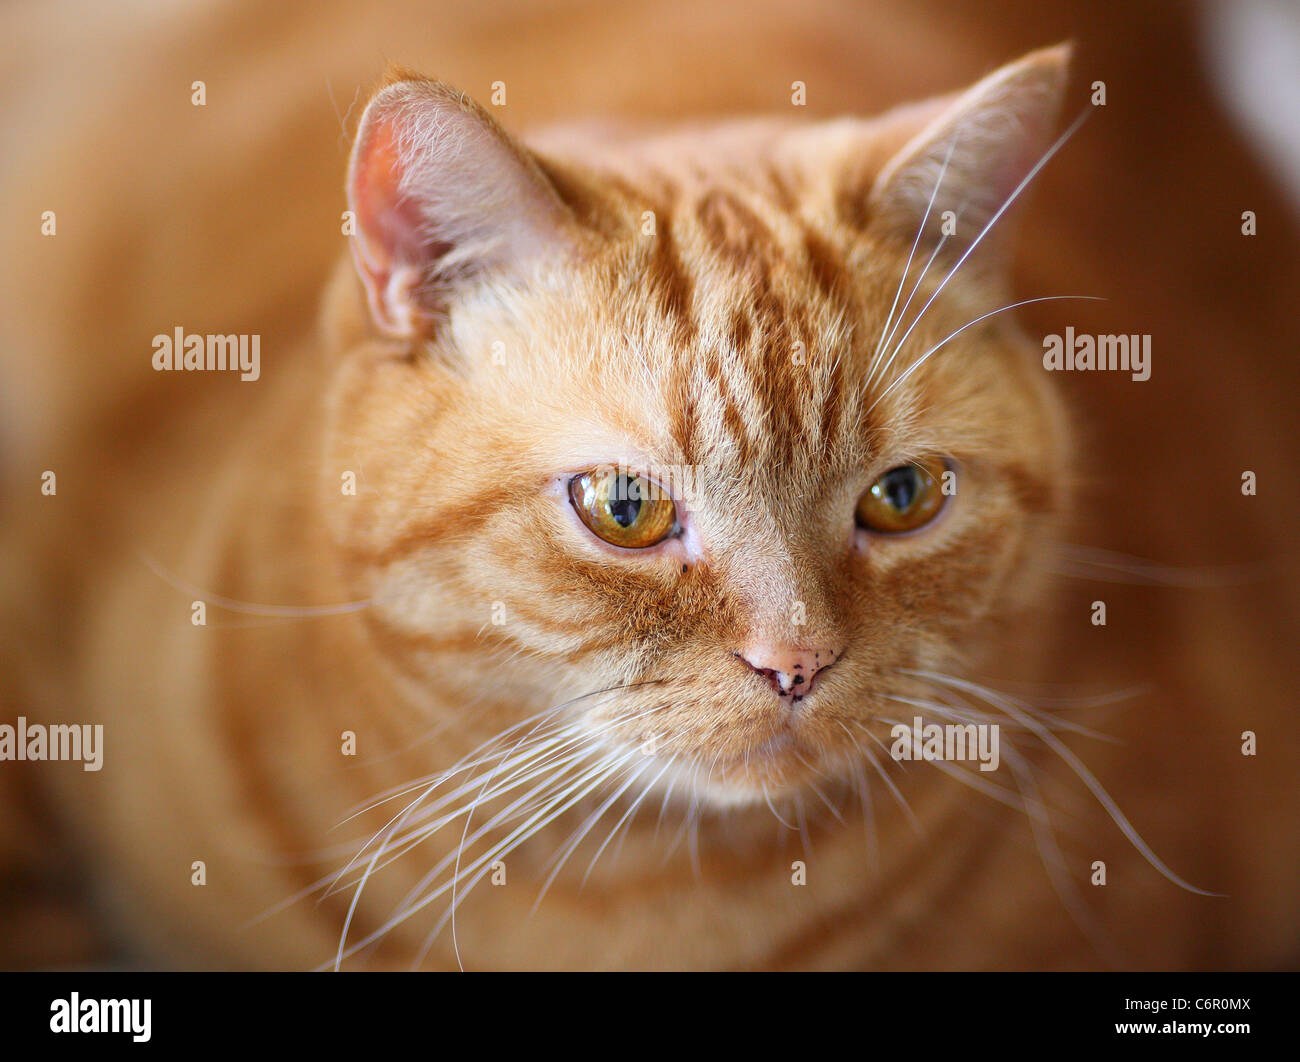 Ginger british shorthair cat  gazing gaze stare Stock Photo